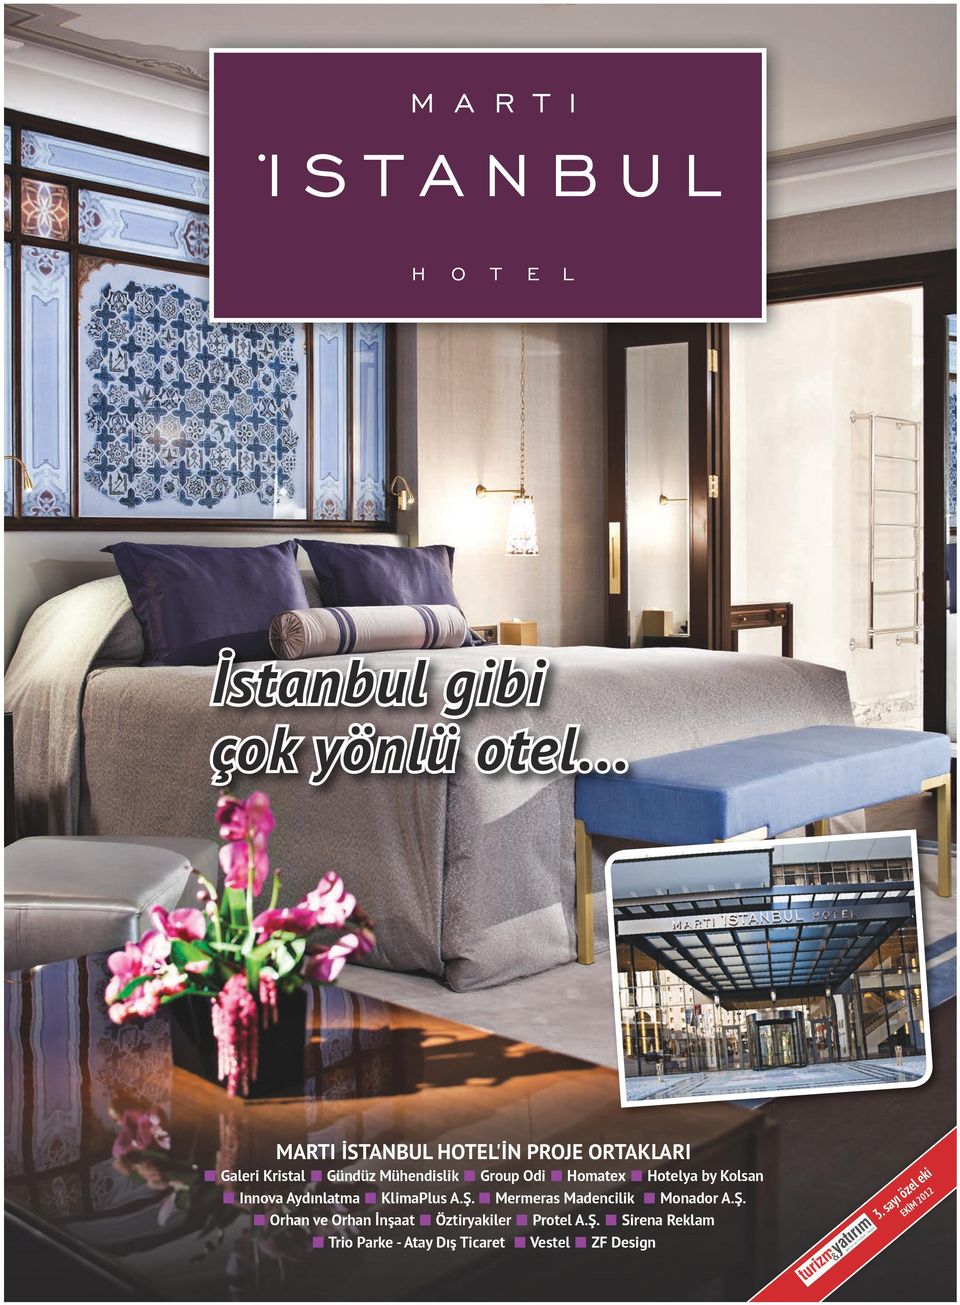 Odi Homatex Hotelya by Kolsan Innova Aydınlatma KlimaPlus A.Ş.